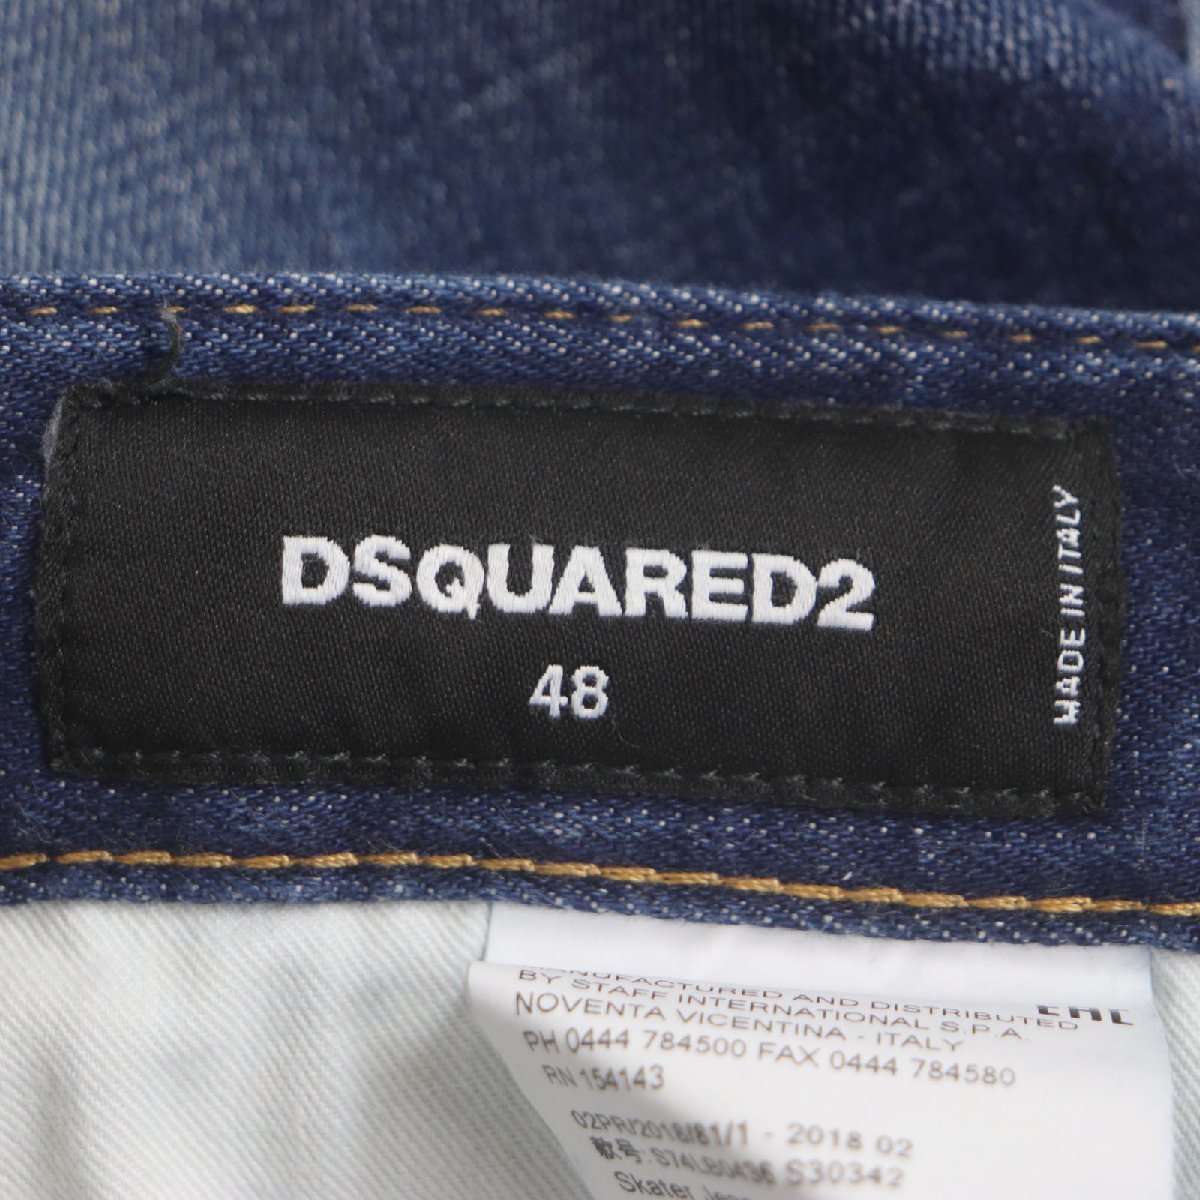 [ Don Don пересмотр ] прекрасный товар DSQUARED2 Dsquared 18AW S74LB0436 Denim брюки индиго 48 Италия производства стандартный товар мужской 